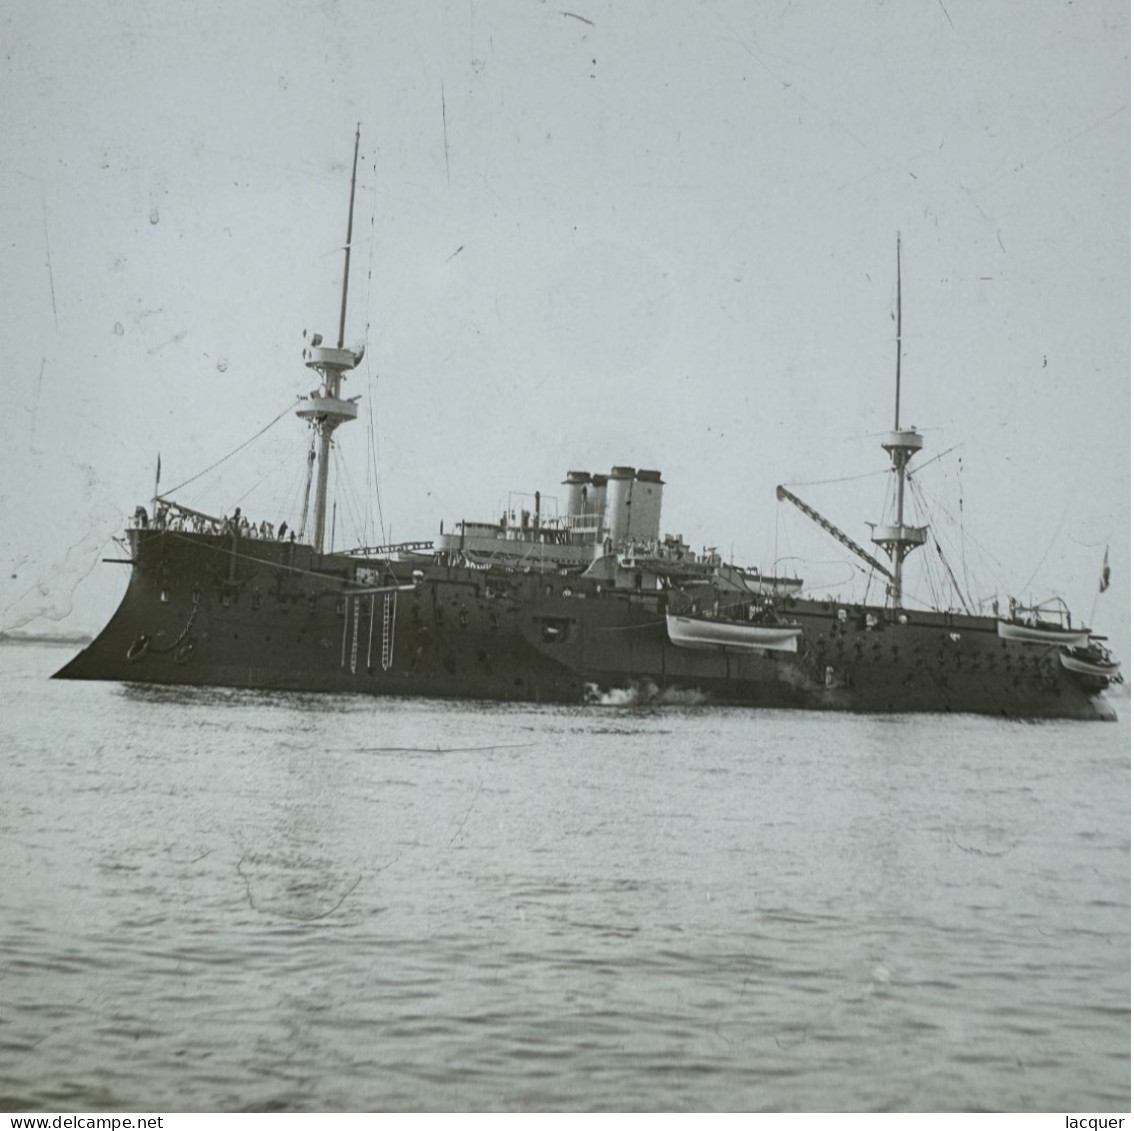 Collection de 9 photographies stéréo sur verre de navires à vapeur et de navires de guerre. France c. 1900 8,5 x 17,5 cm